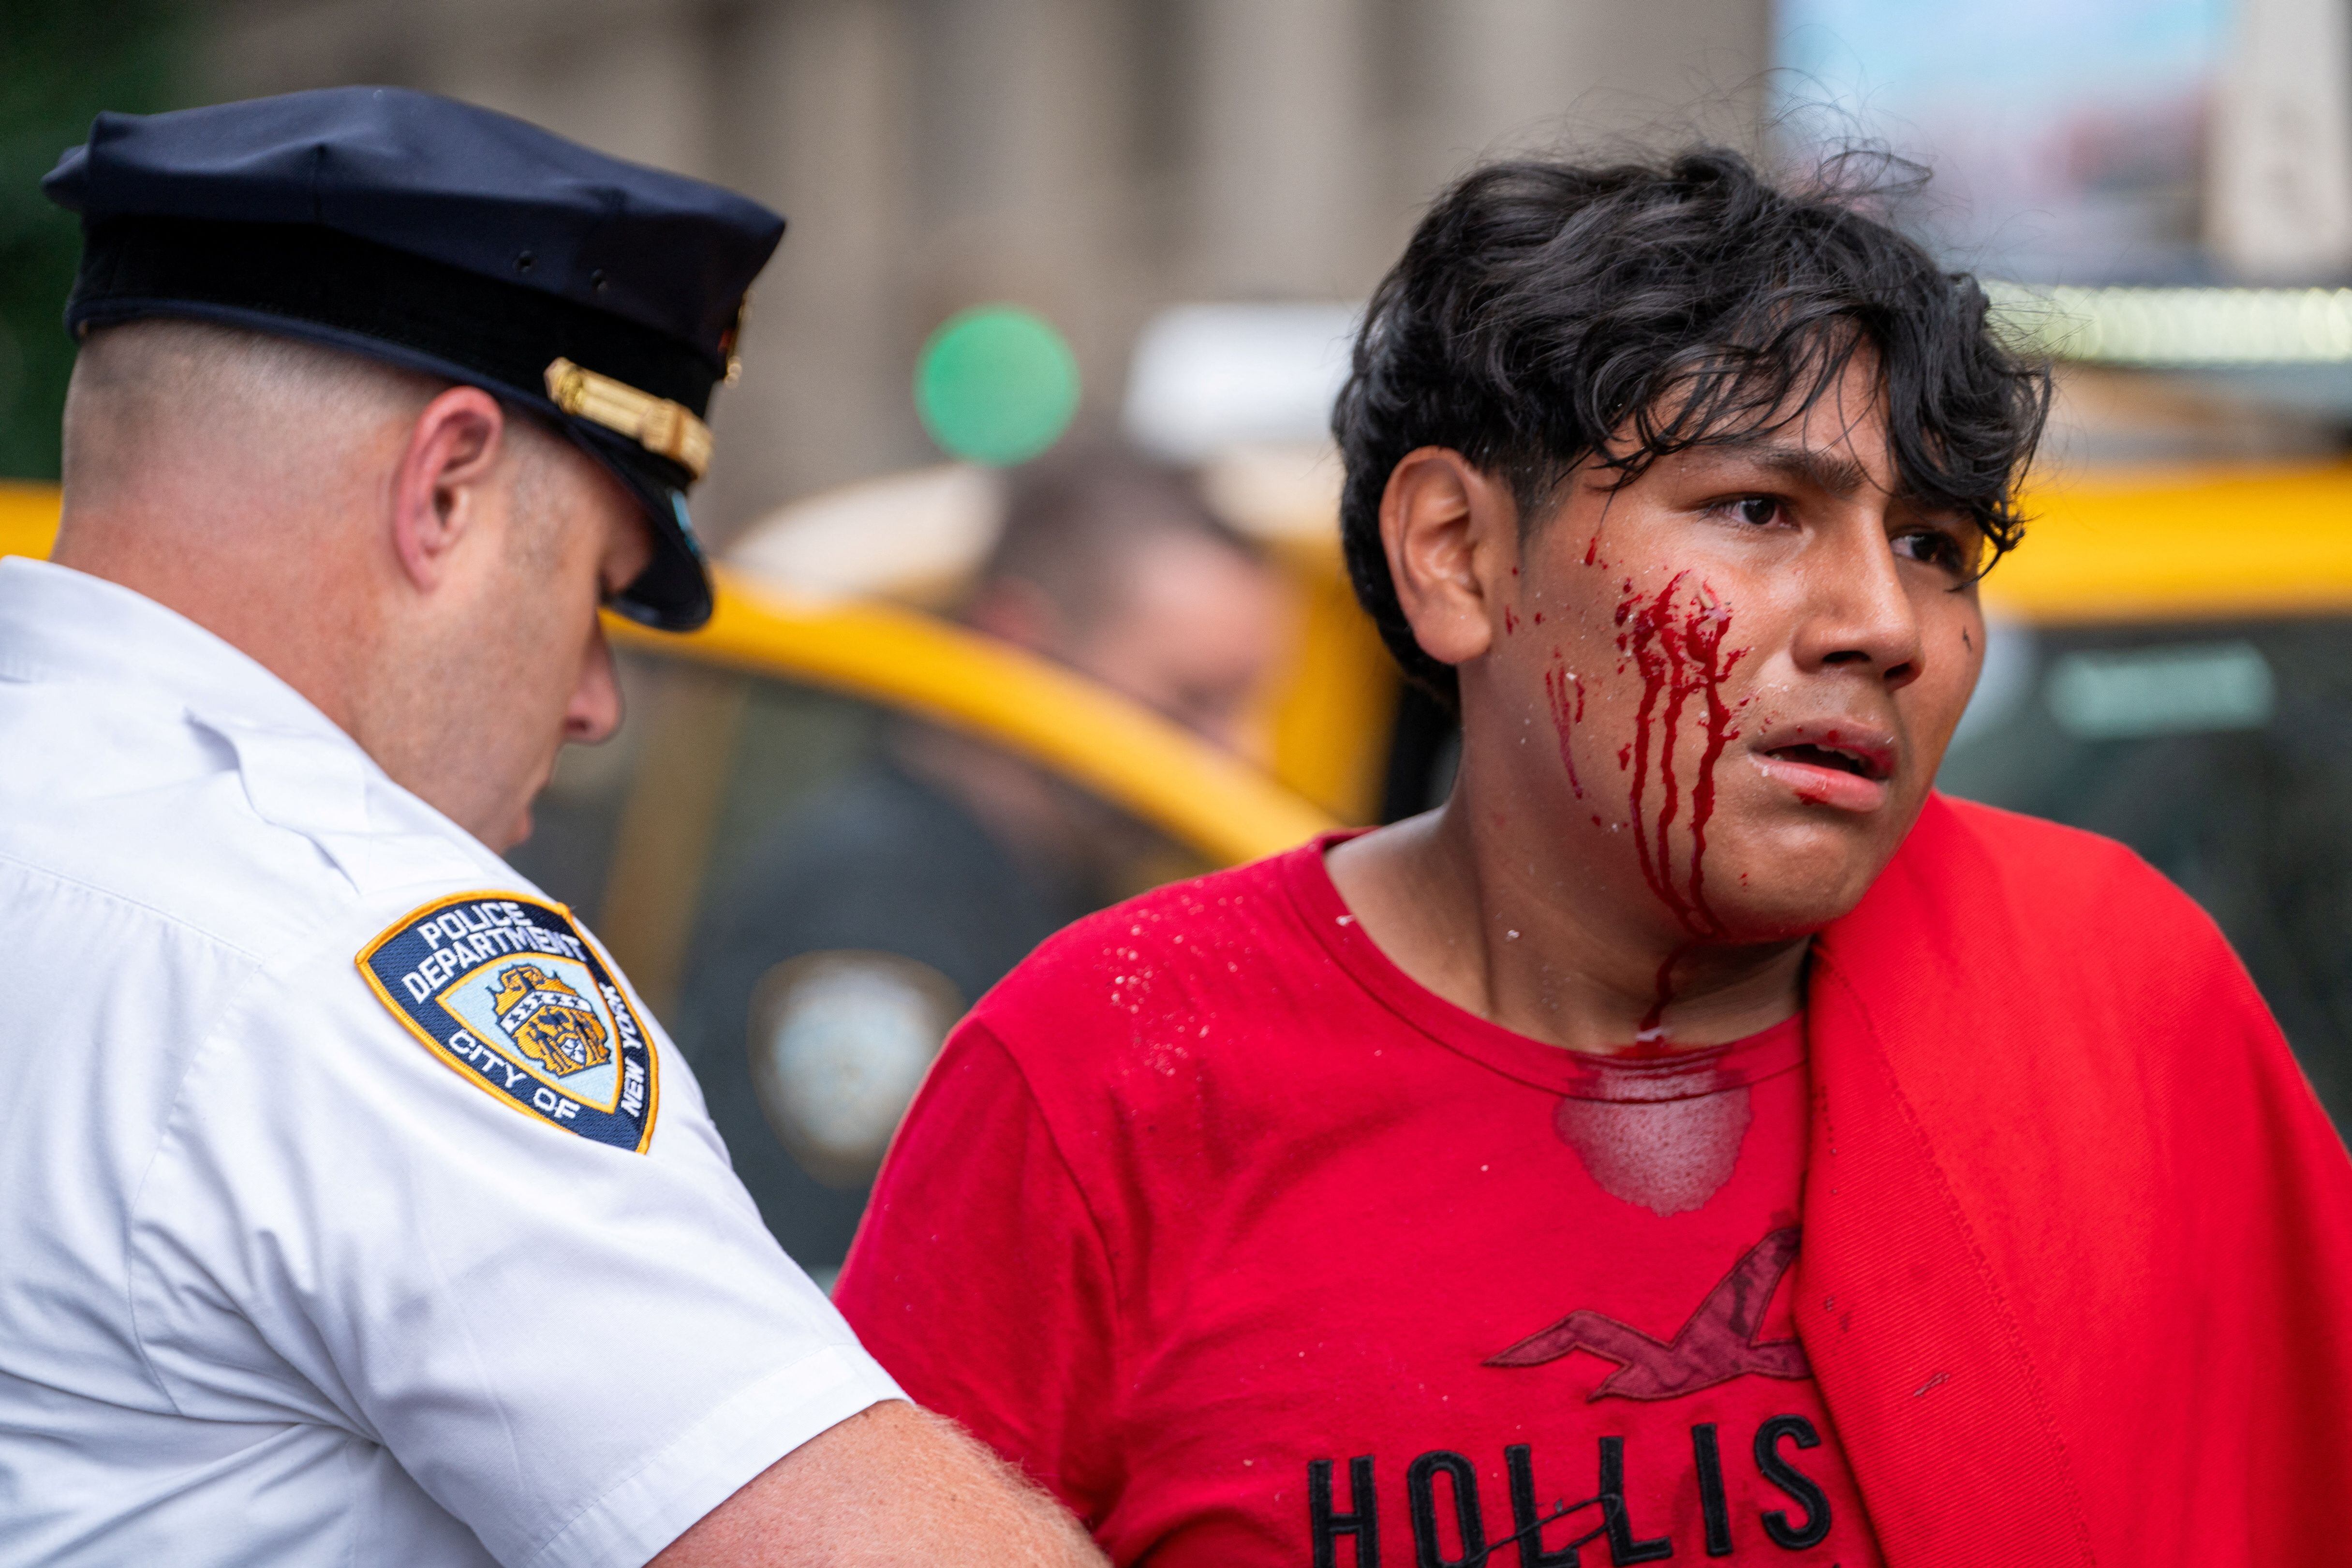 La policía de Nueva York no ha brindado información sobre heridos o detenciones (REUTERS/David 'Dee' Delgado)